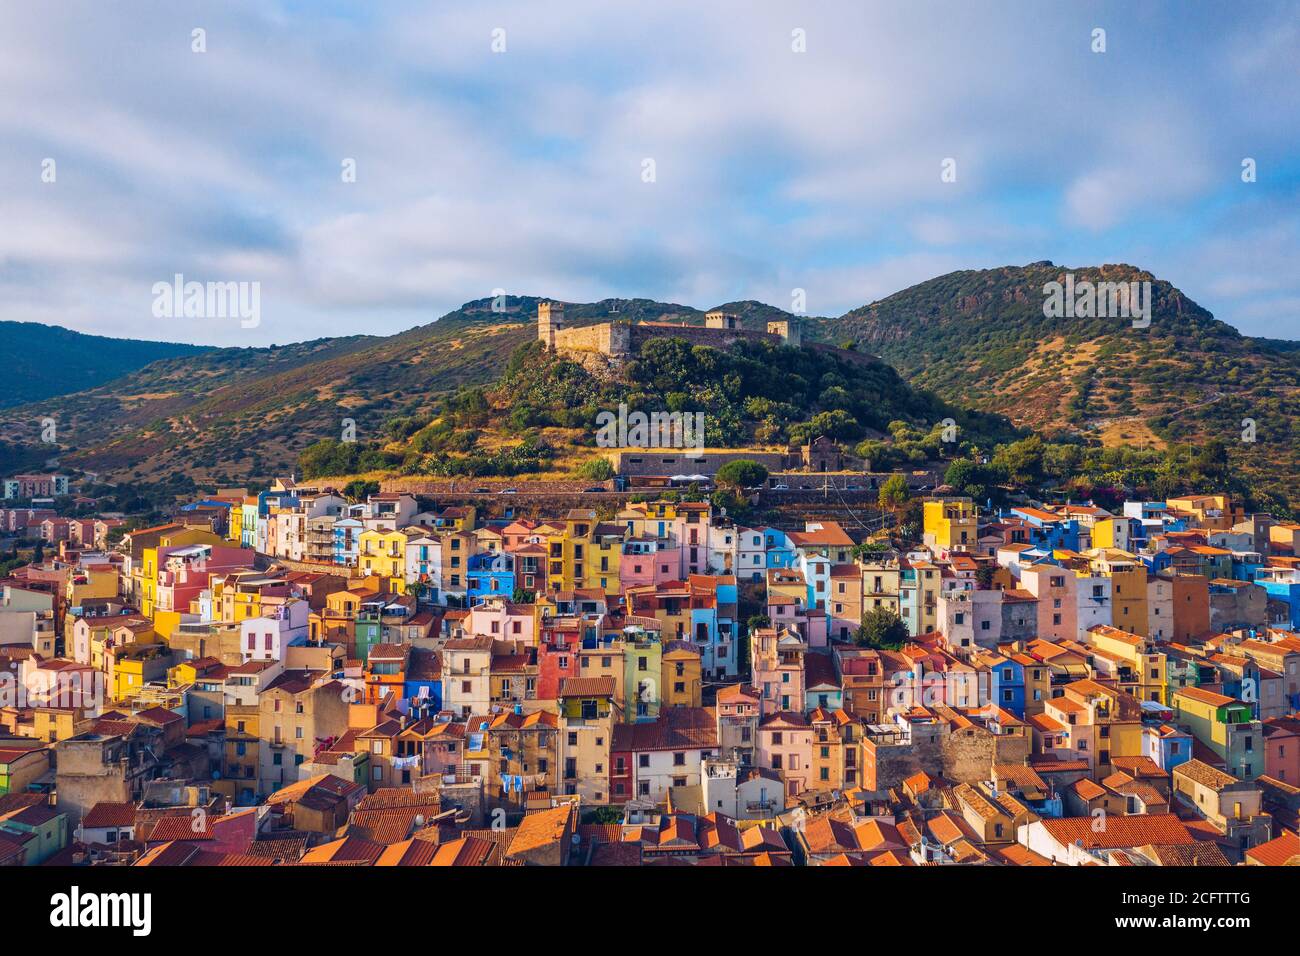 Luftaufnahme des schönen Dorfes Bosa mit farbigen Häusern und einer mittelalterlichen Burg. Bosa liegt im Norden Sardiniens, Italien. Antenne V Stockfoto